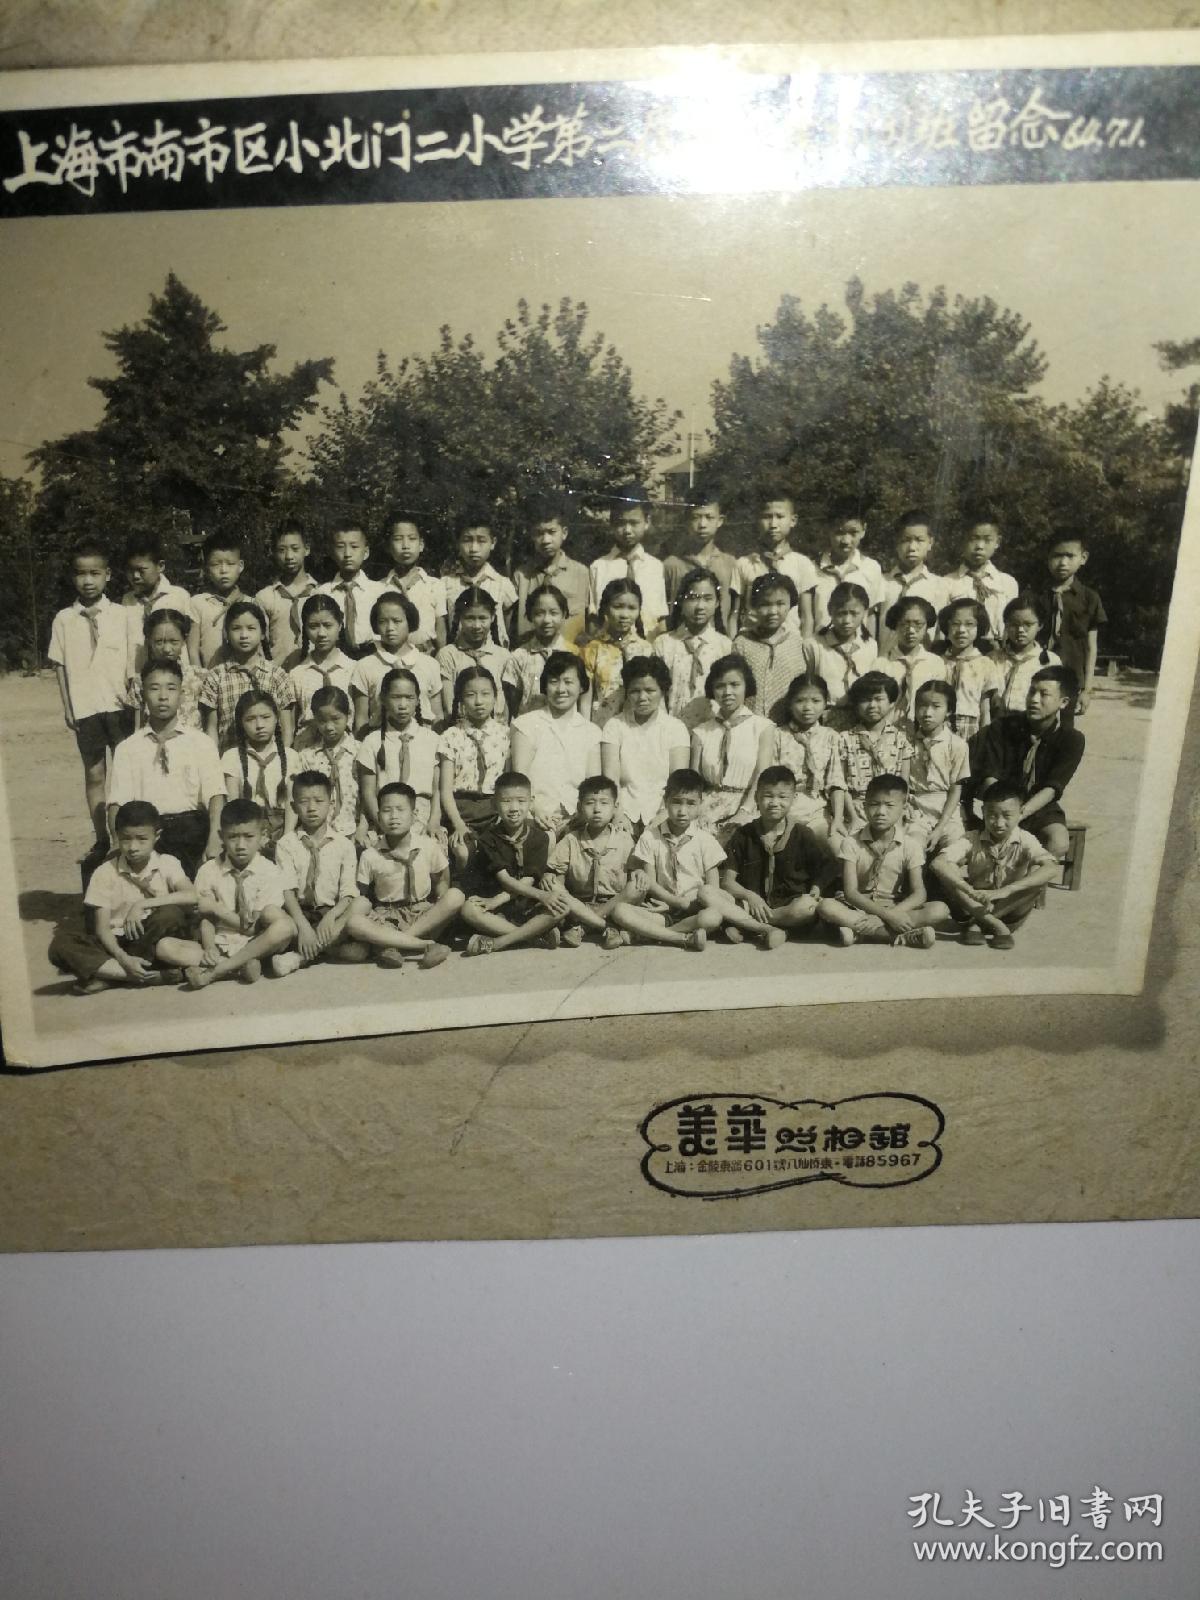 上海市南市区小北门二小学第二届毕业生六（3）班留念，1964年7月1日，美华照相馆